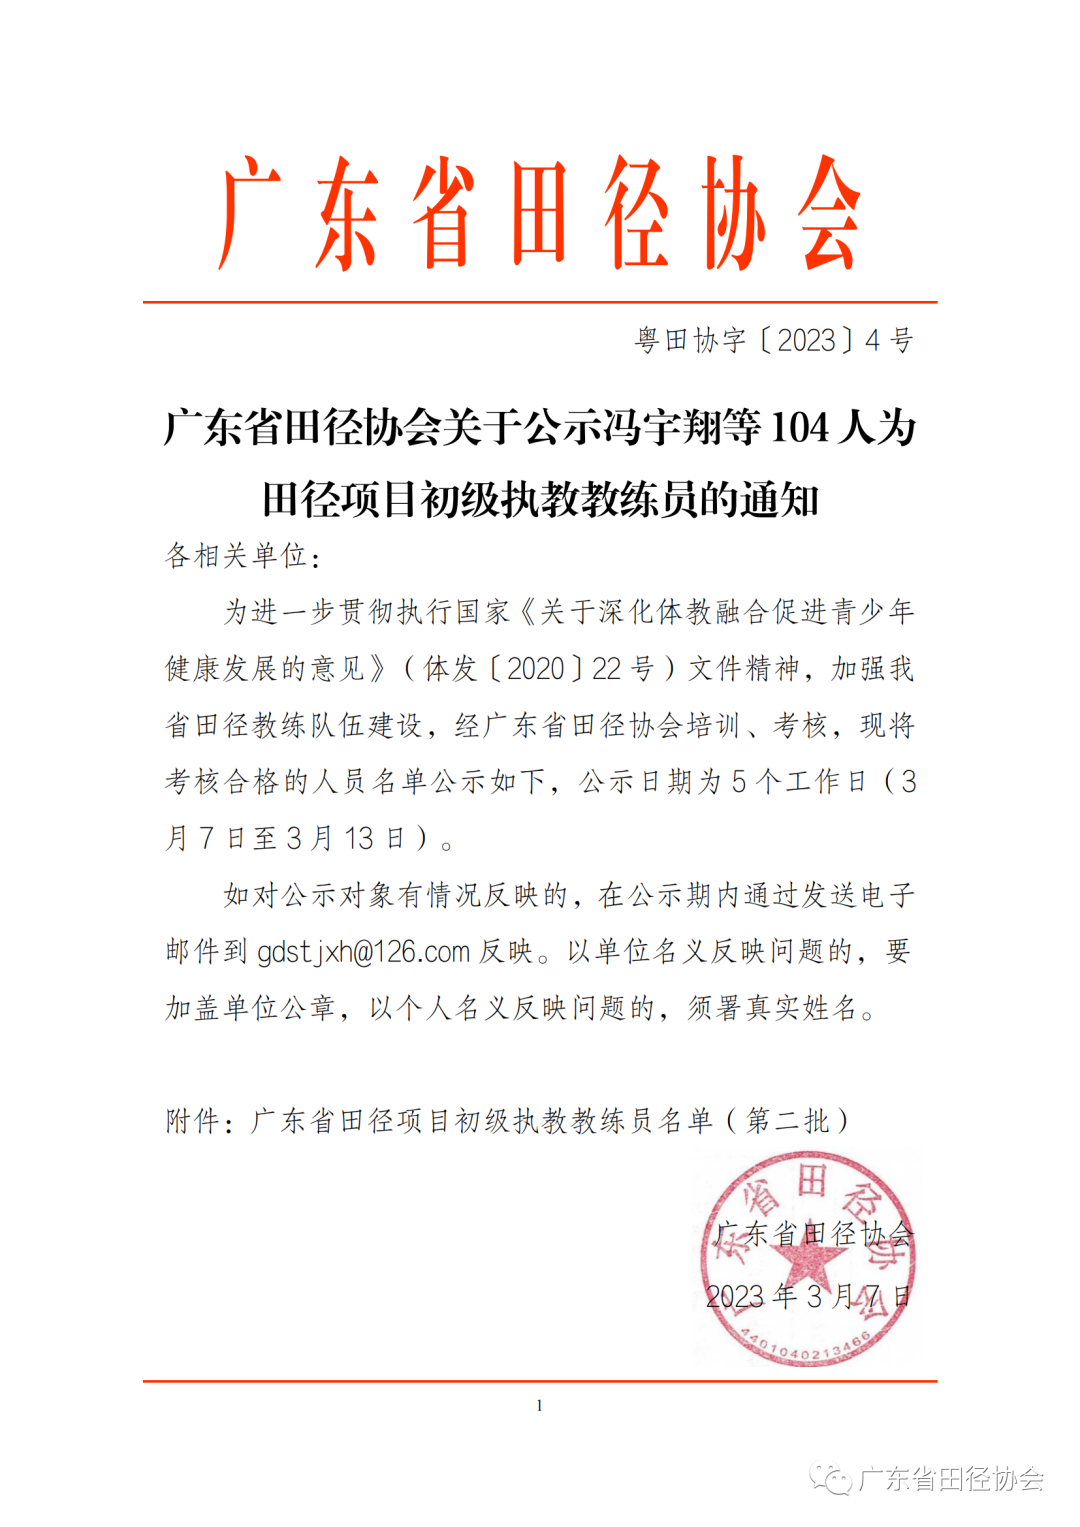 广东省田径协会关于公示冯宇翔等104人为田径项目初级执教教练员的通知(图1)